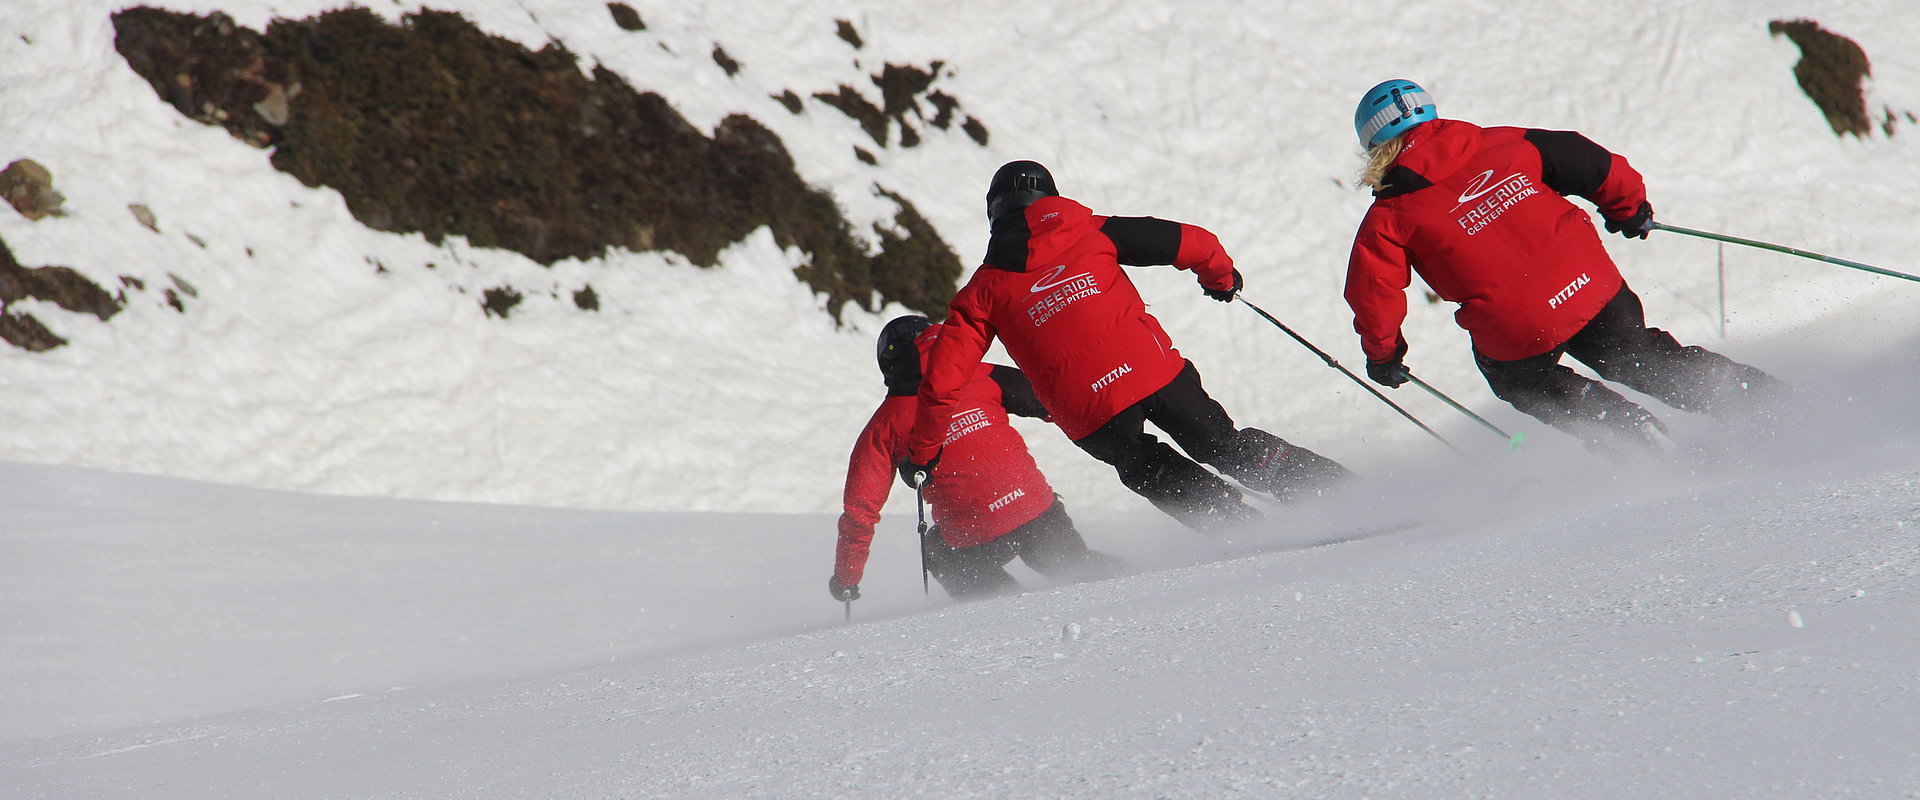 Schwungvolle Abfahrt mit unseren Profis © Skischule Pitztal Kirschner Werner